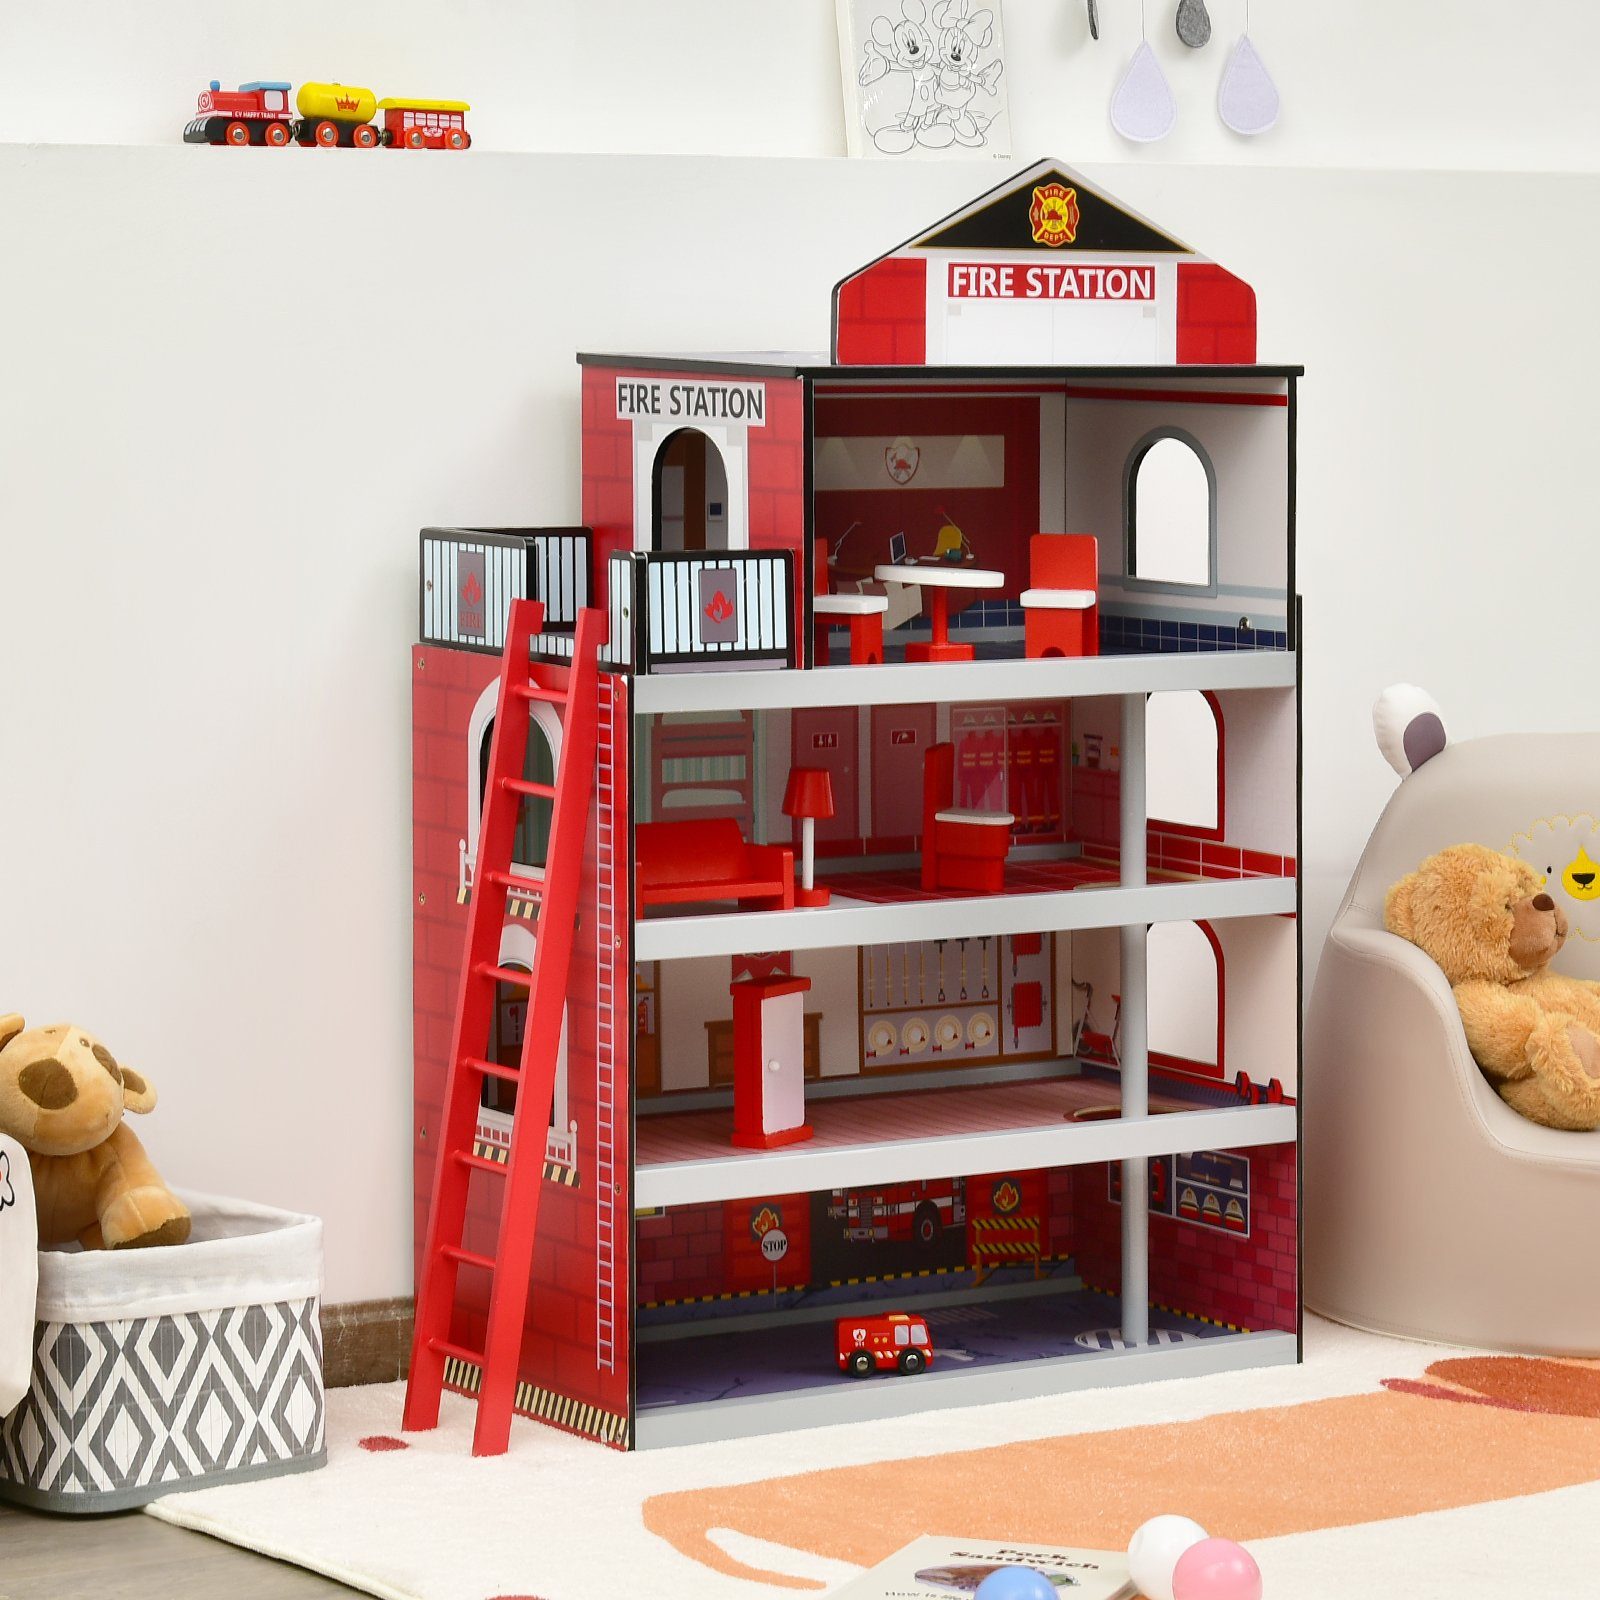 COSTWAY Spielzeug-Feuerwehr »Feuerwehrstation, Feuerwache Spielset,  Feuerwehrhaus«, 4 Ebenen, mit LKW & Hubschrauber, für Kinder ab 3 Jahren  online kaufen | OTTO